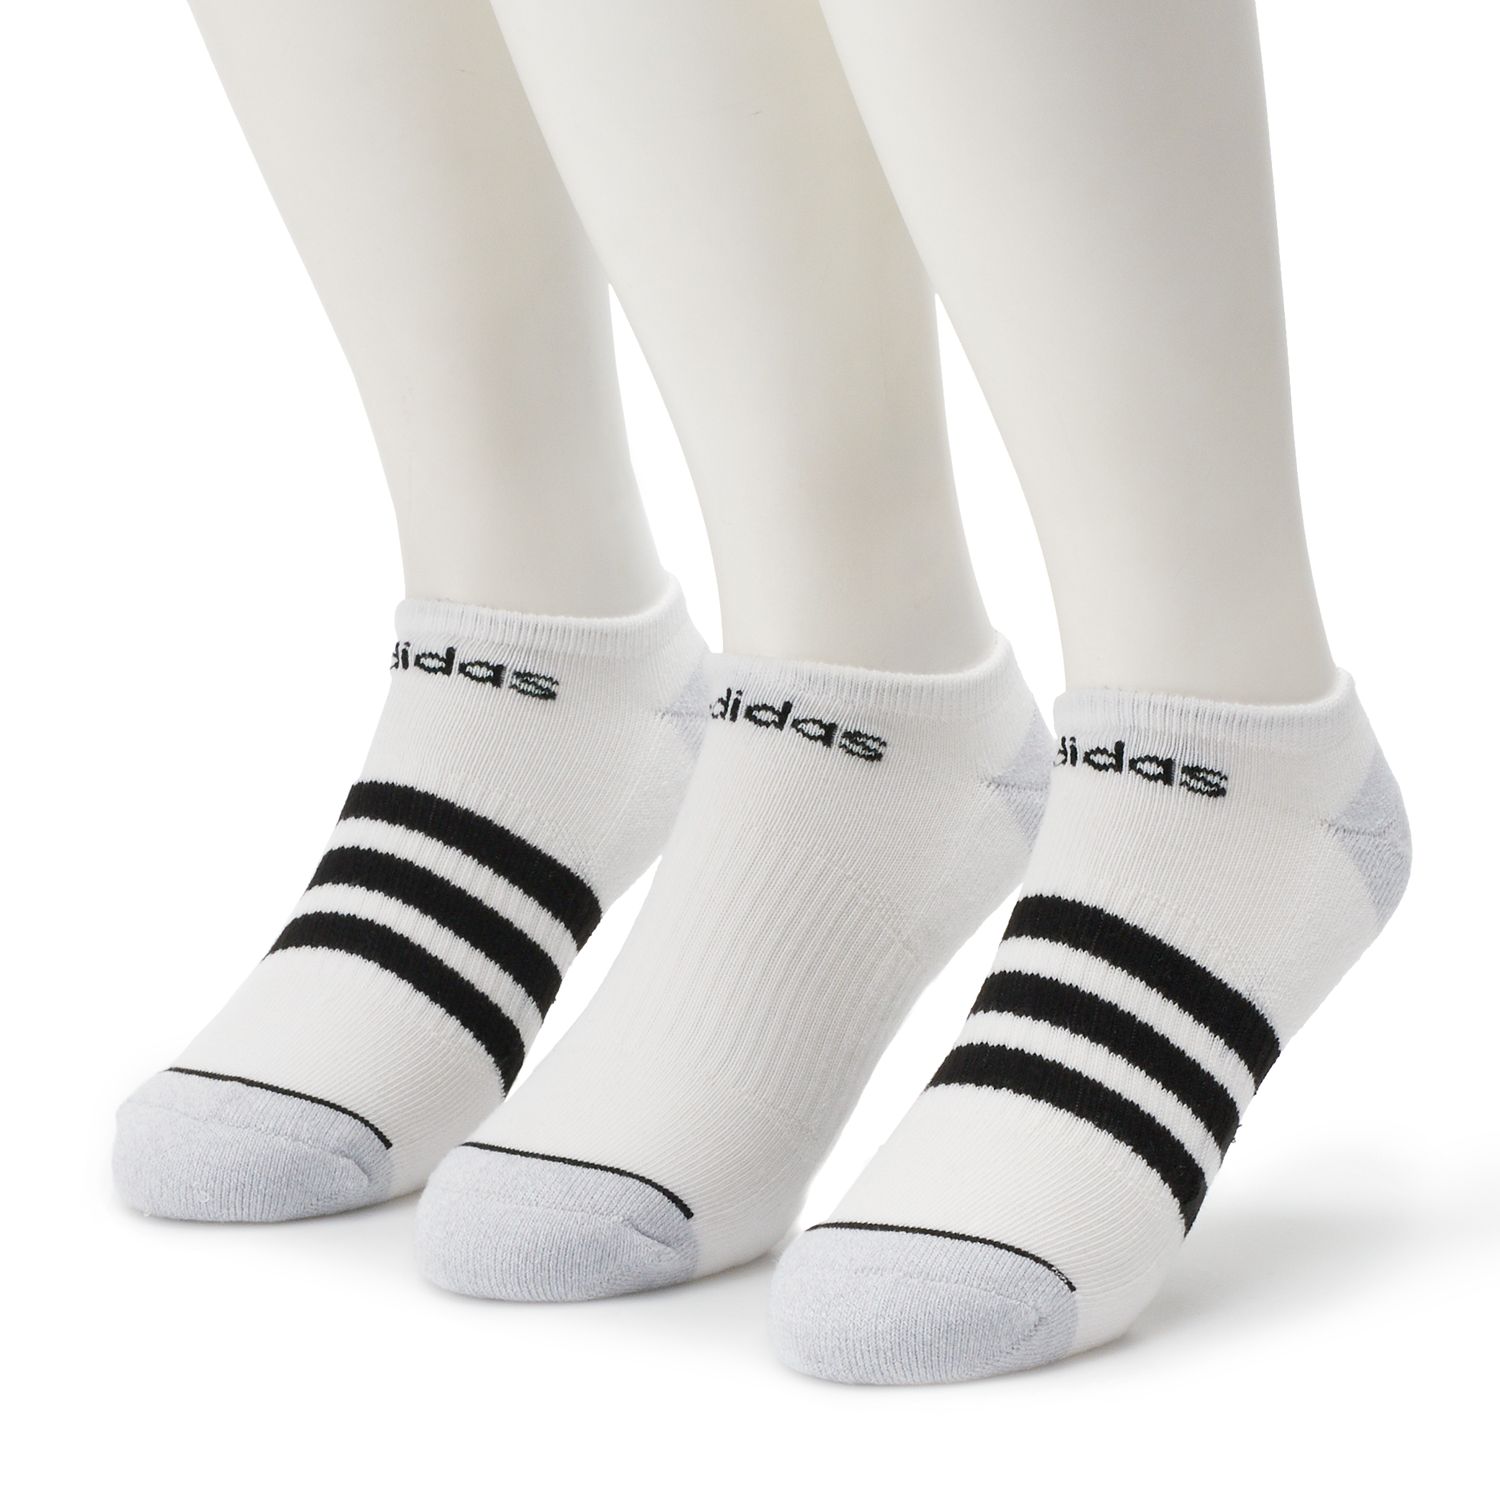 adidas 3 pack socks